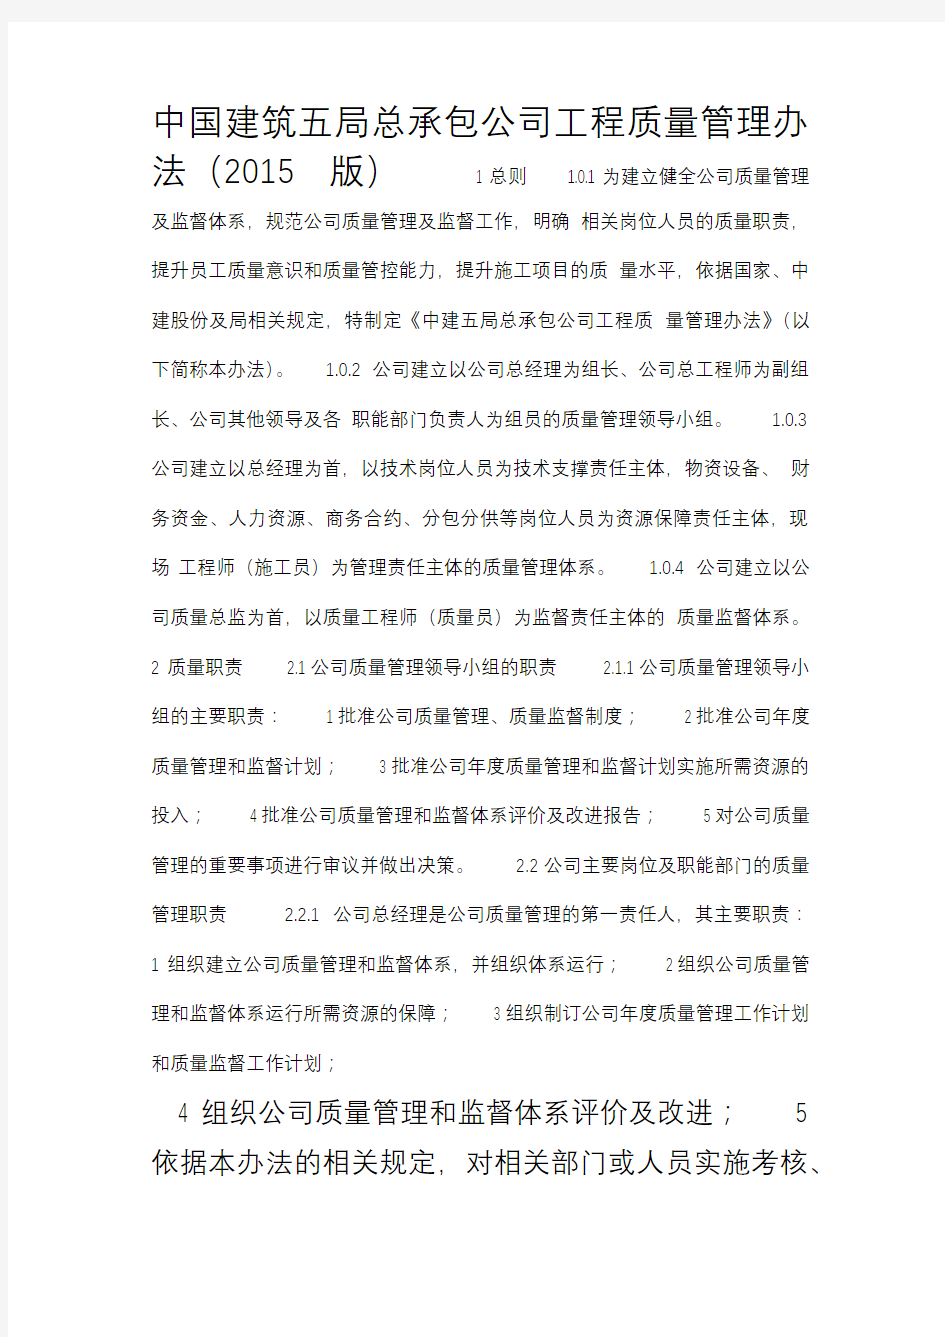 中国建筑五局总承包公司工程质量管理办法(2015版)